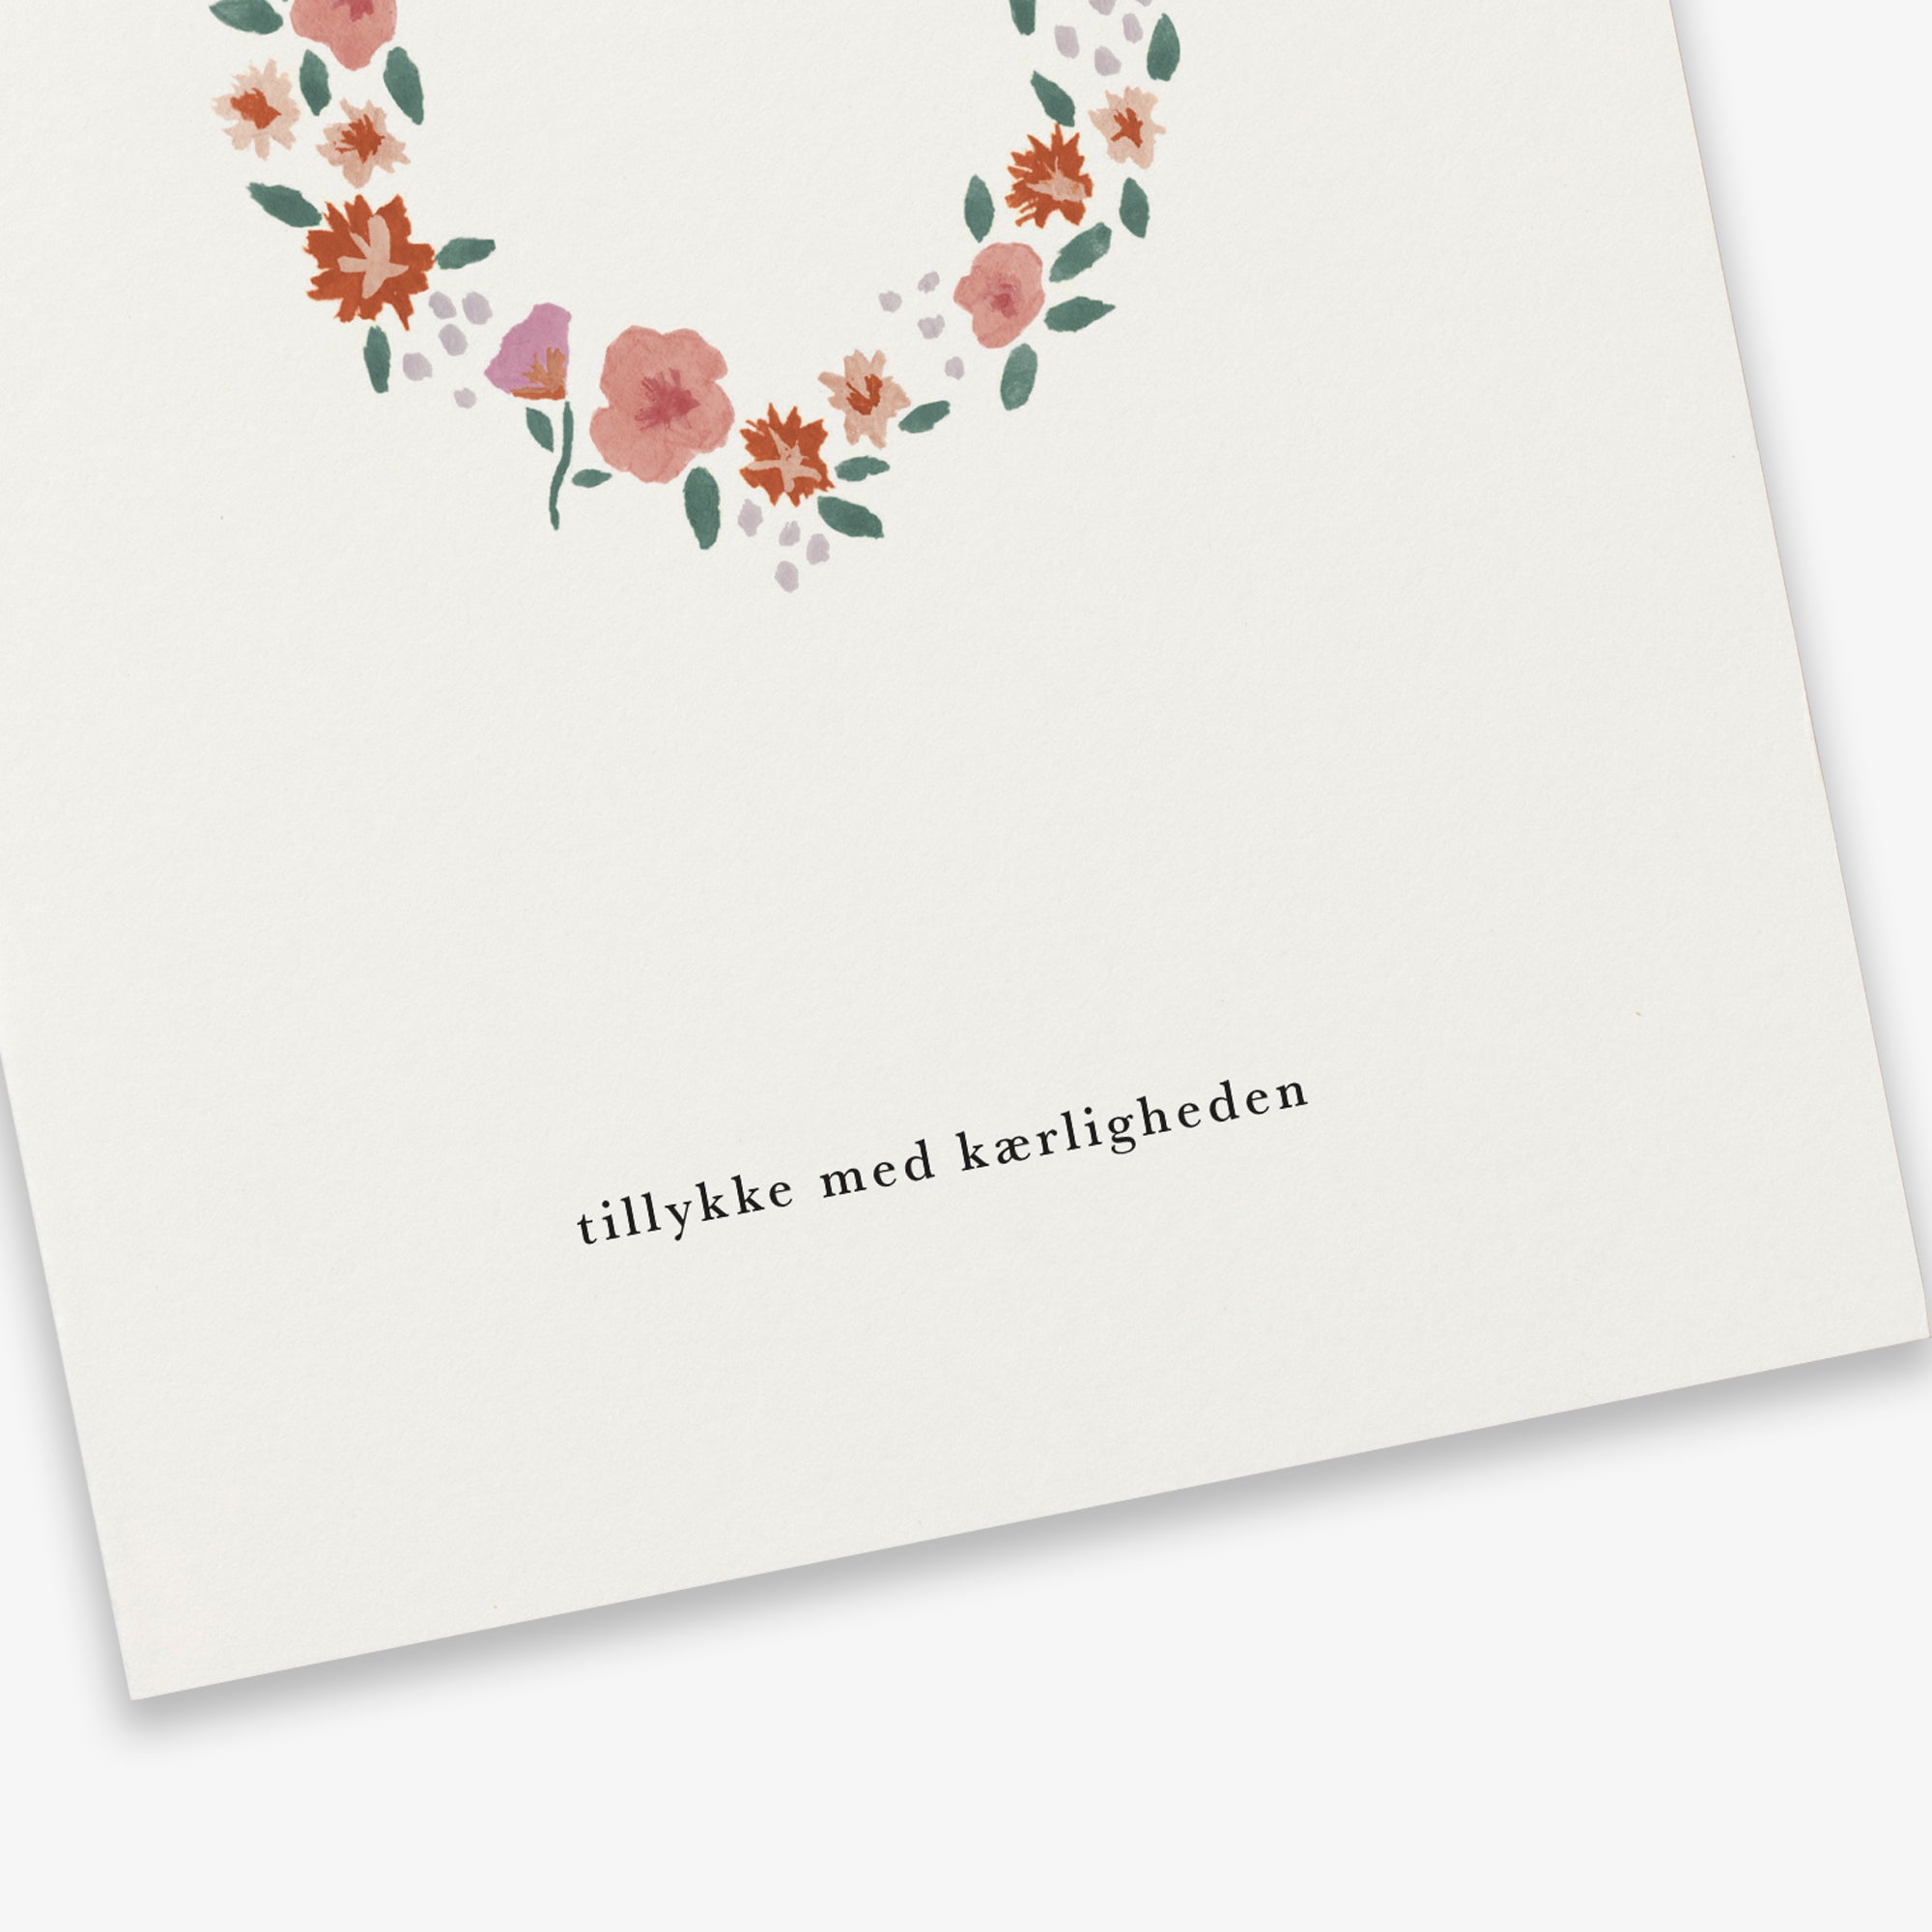 GREETING CARD // KÆRLIGHEDSKRANS (DANISH)